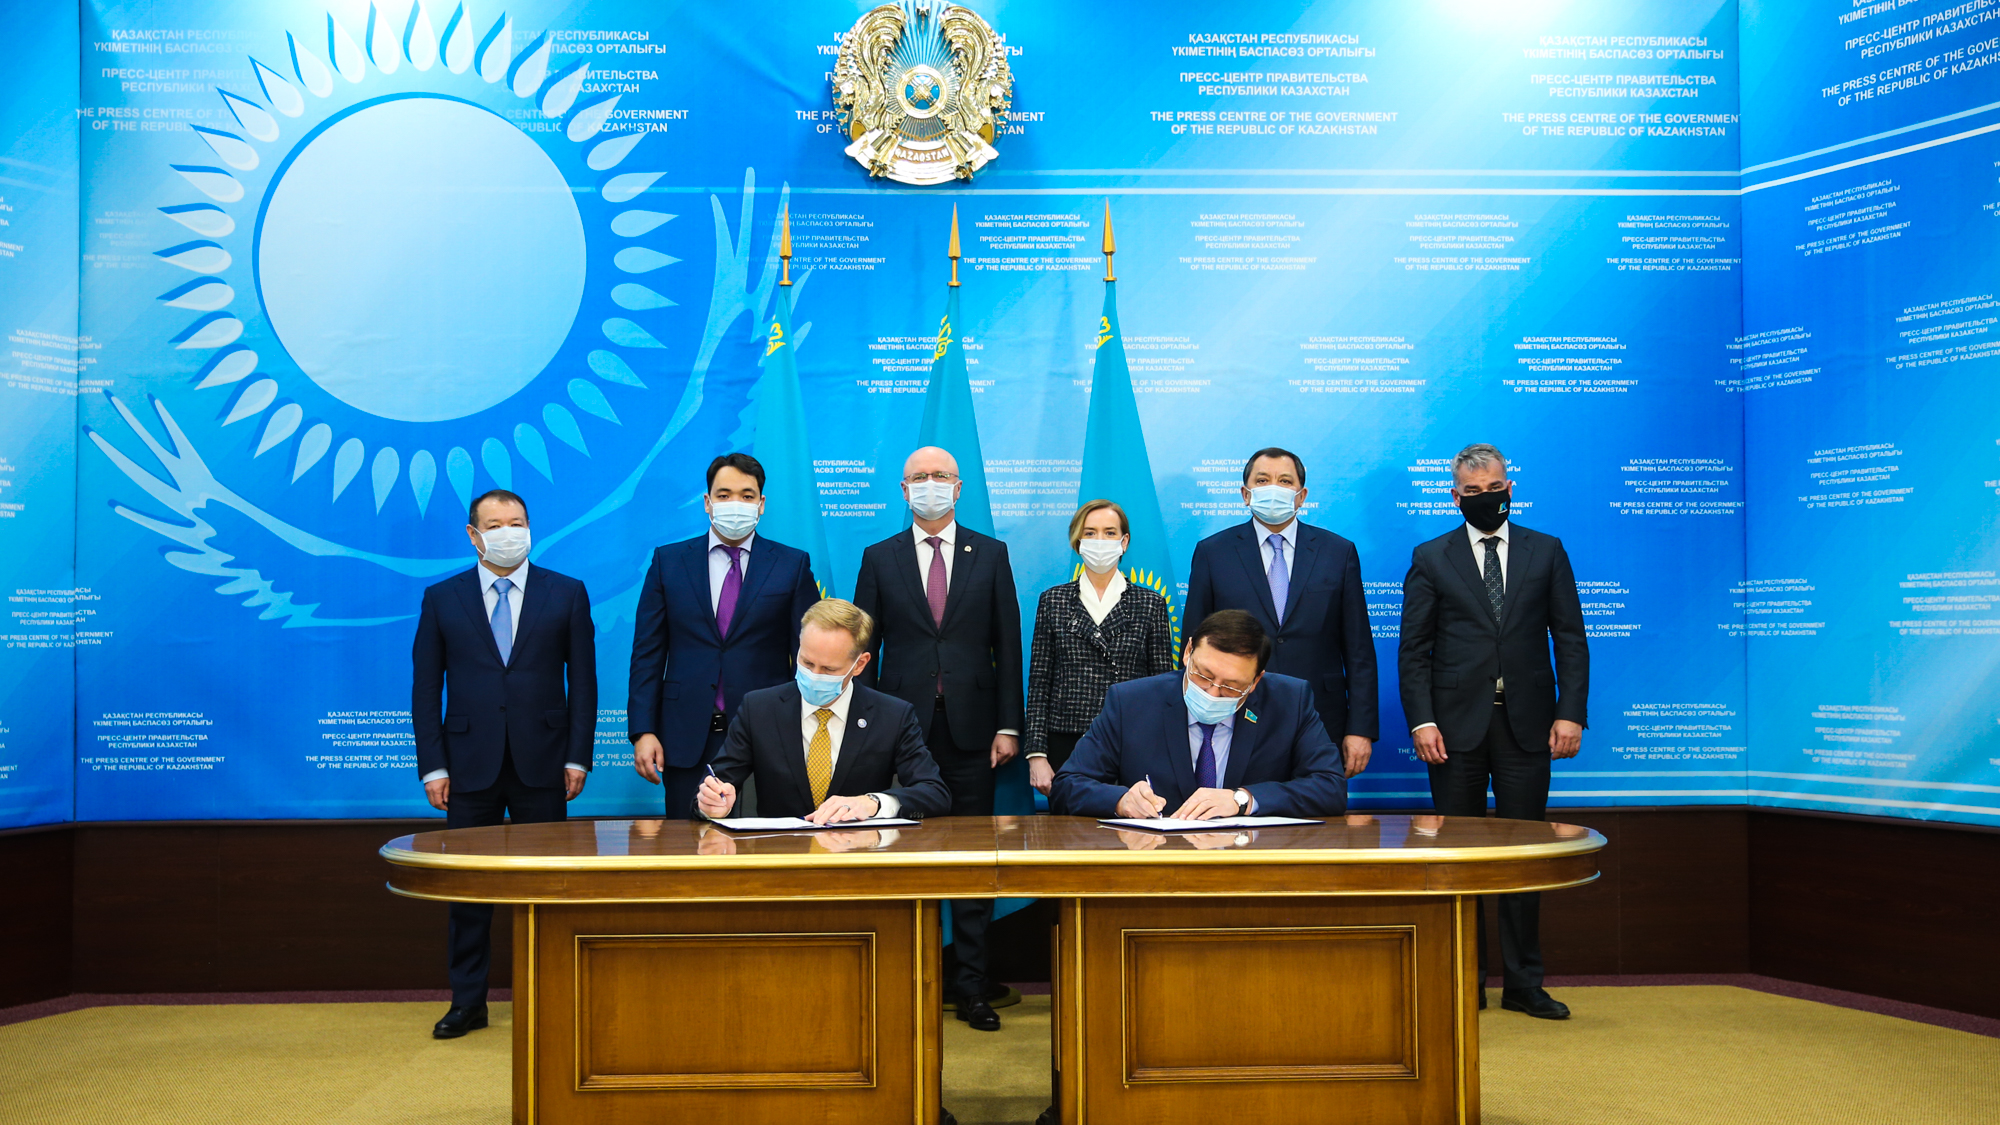 Kazakistan'da Uluslararası Petrol ve Gaz Mühendisliğini Geliştirme Merkezi'nin kurulmasına ilişkin anlaşma imzalandı. Uluslararası Petrol ve Gaz Mühendisliğini Geliştirme Merkezi'nin kurulmasını öngören anlaşma, hükümet üyeleri ile ülkenin en büyük petrol üreticilerinin katılımıyla düzenlenen törende imzalandı. ( Kazakistan Başbakanlığı Basın Ofisi - Anadolu Ajansı )